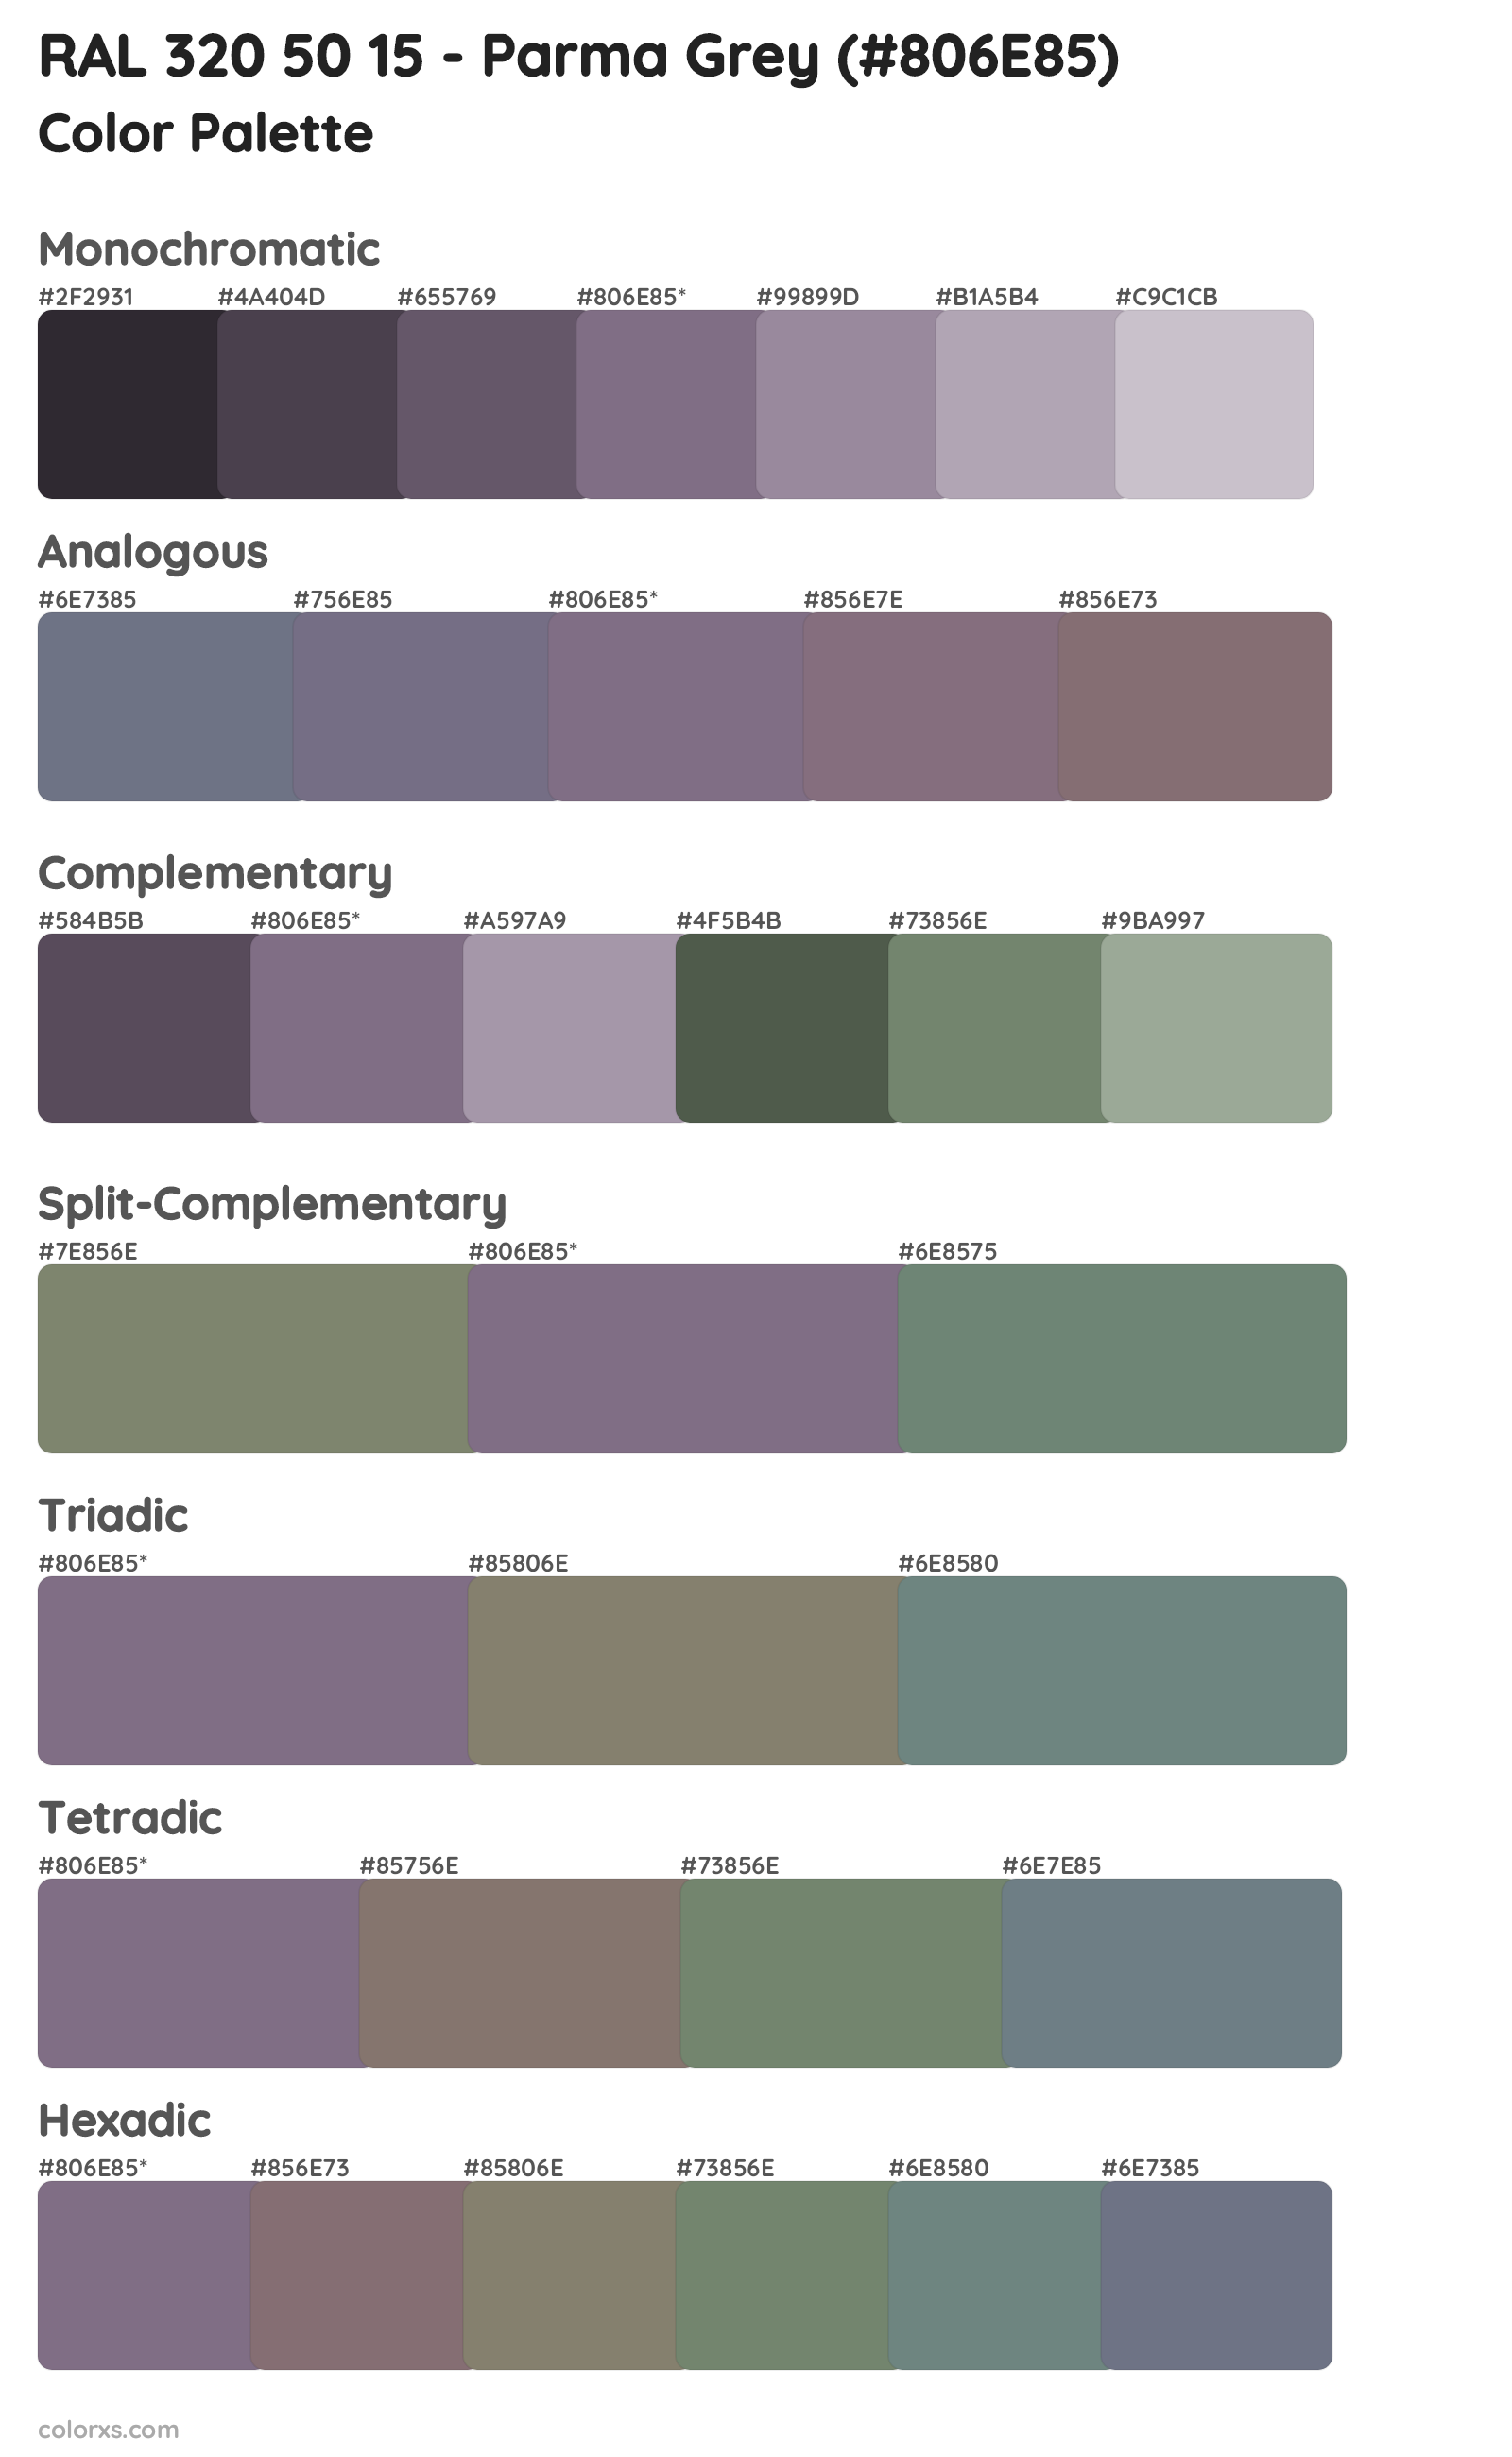 RAL 320 50 15 - Parma Grey Color Scheme Palettes